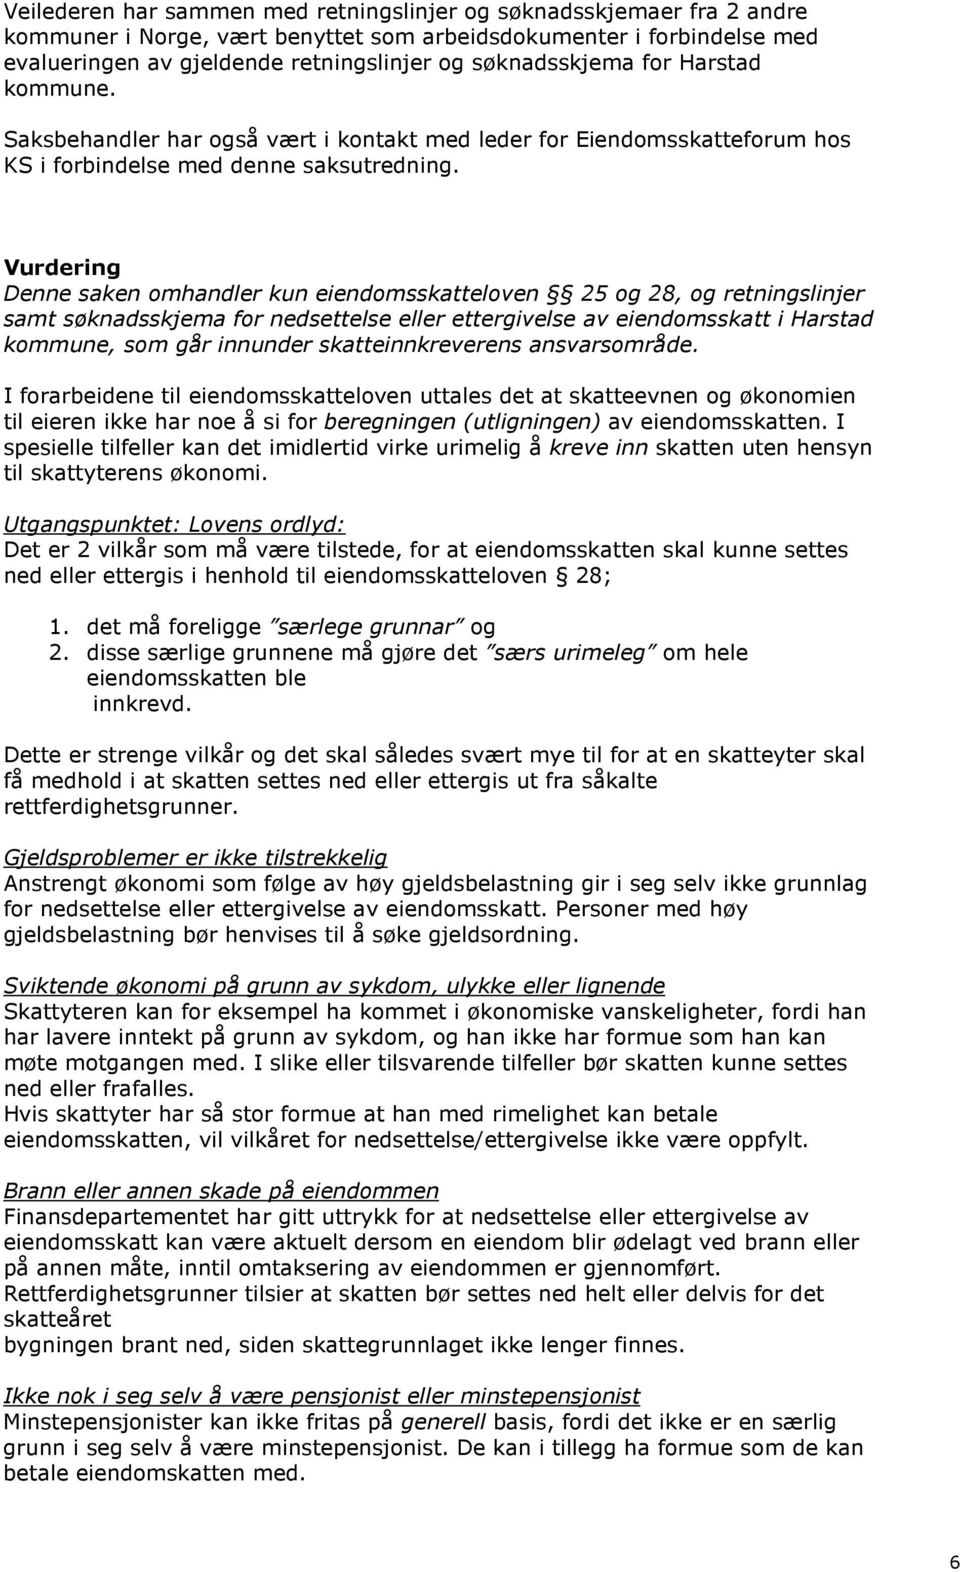 Vurdering Denne saken omhandler kun eiendomsskatteloven 25 og 28, og retningslinjer samt søknadsskjema for nedsettelse eller ettergivelse av eiendomsskatt i Harstad kommune, som går innunder